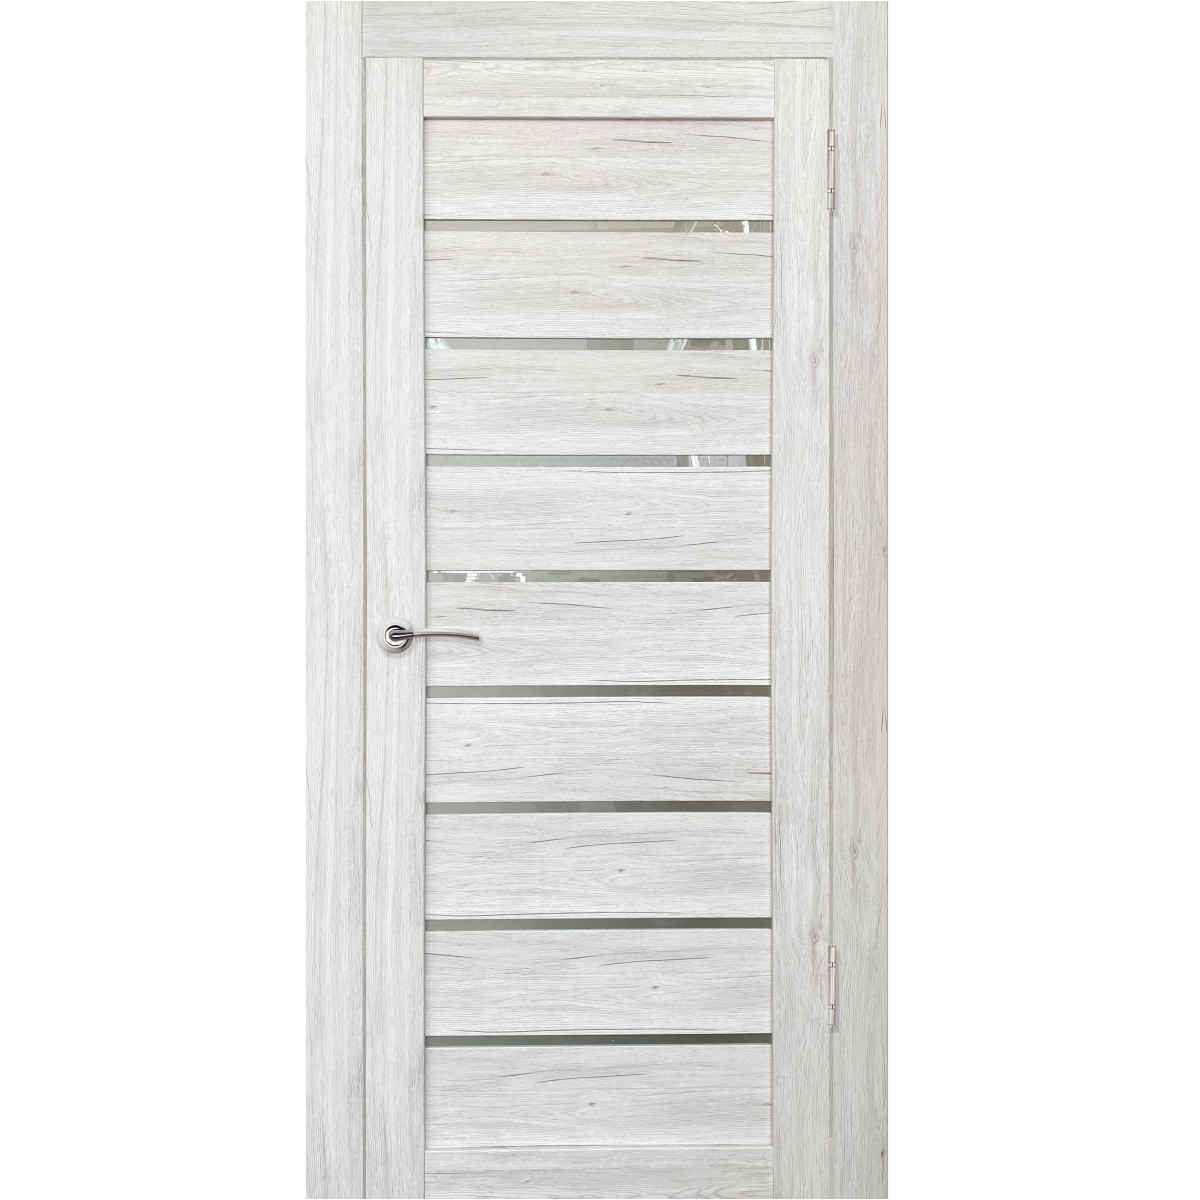 Дверь межкомнатная остеклённая Тиволи 90х200 см с фурнитурой, ПВХ, цвет рустик серый